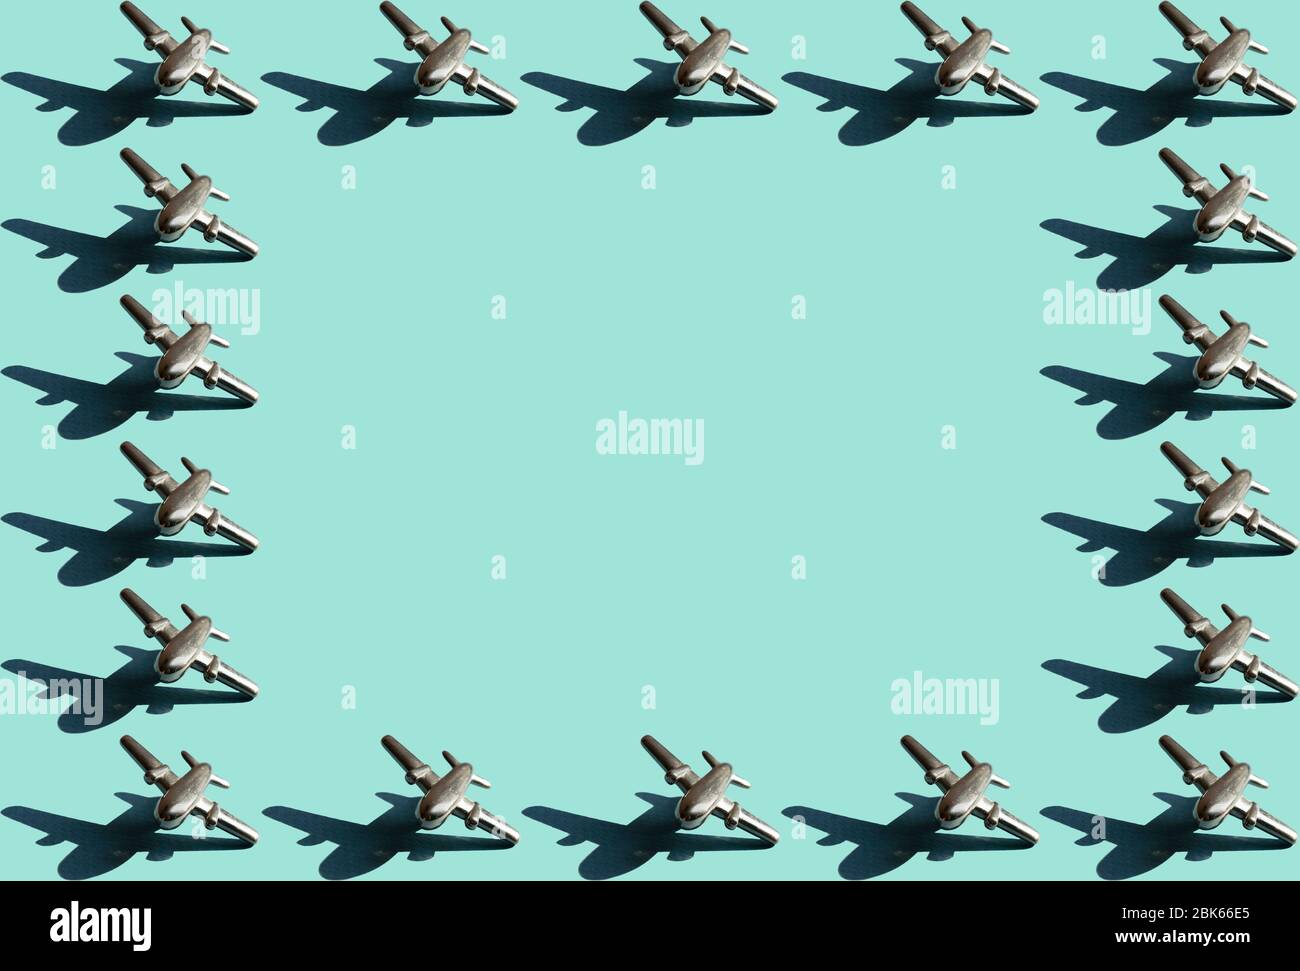 Rahmen aus einzehn Metallfiguren von kleinen Flugzeugen mit Schatten mit dem gleichen Raum zwischen ihnen auf dem hellen mintfarbenen Hintergrund. Konzeptionelle Geometr Stockfoto